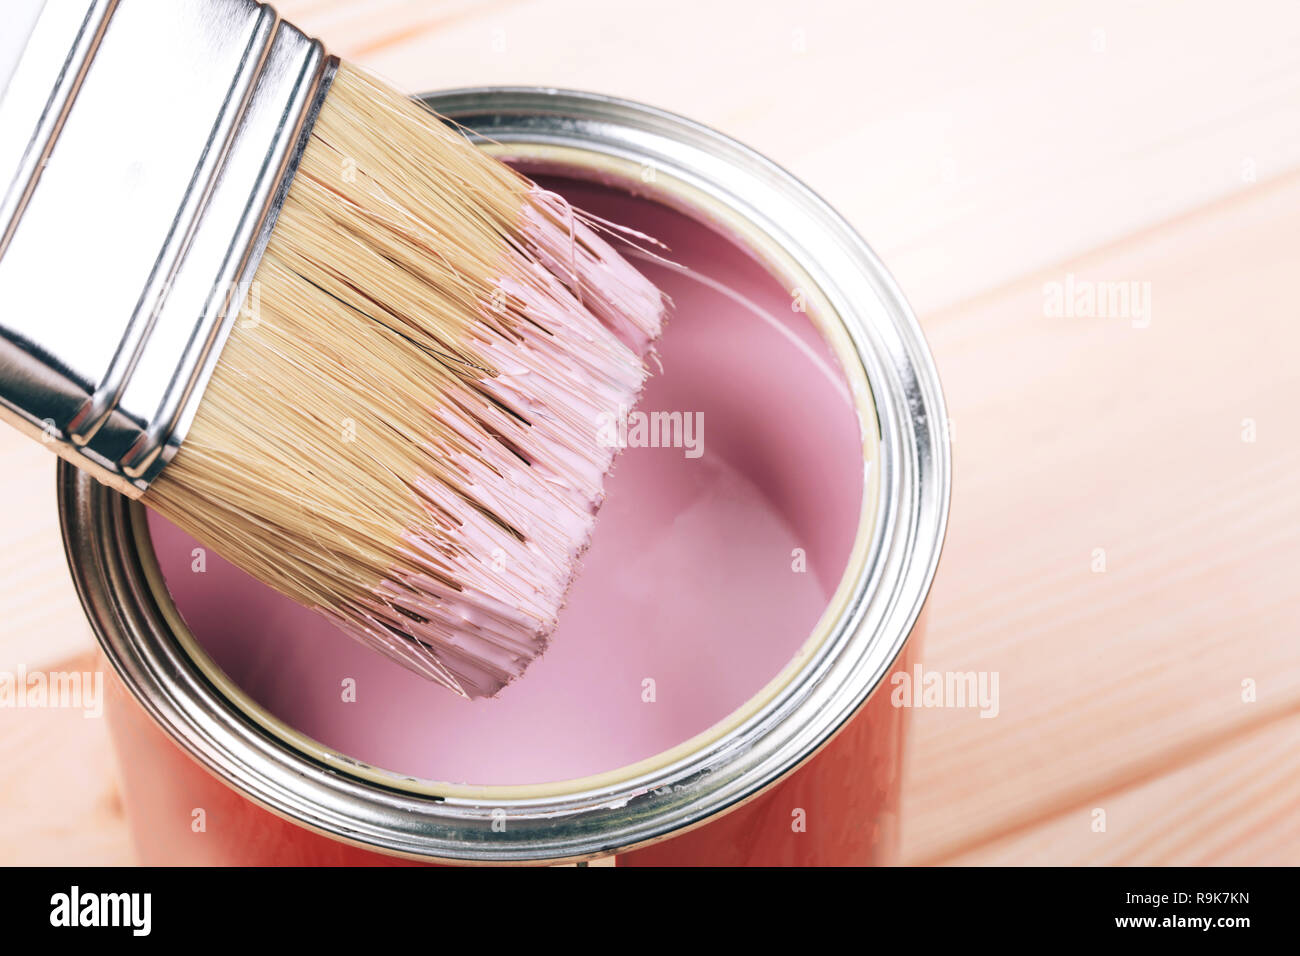 Woman's hand avec pinceau blanc application de peinture rose sur des meubles en bois. Concept de rénovation. Banque D'Images